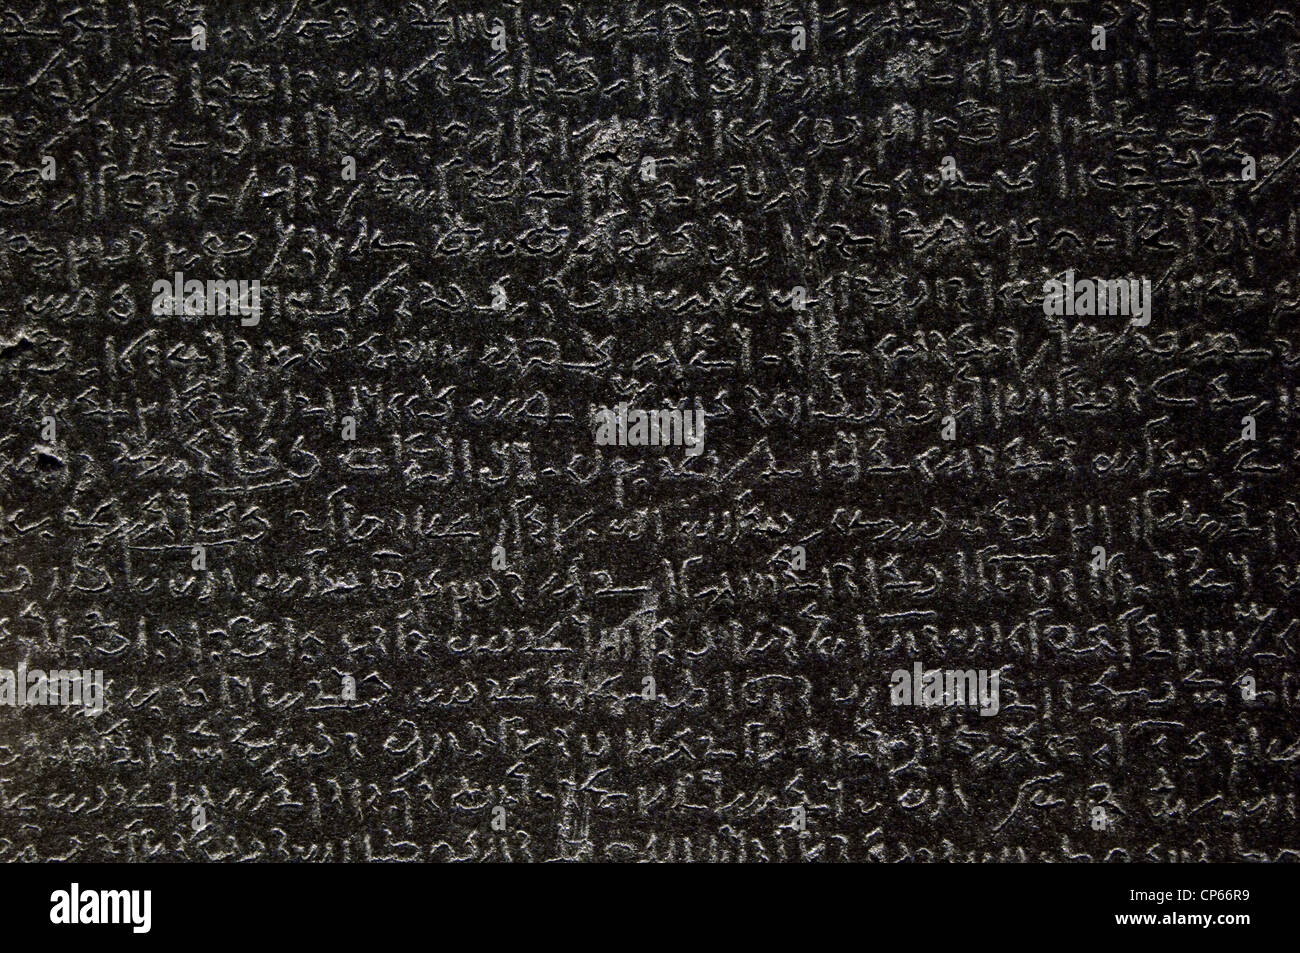 La Rosetta Stone. Epoca tolemaica. 196 BC. Demotic scrittura. Dettaglio. Foto Stock